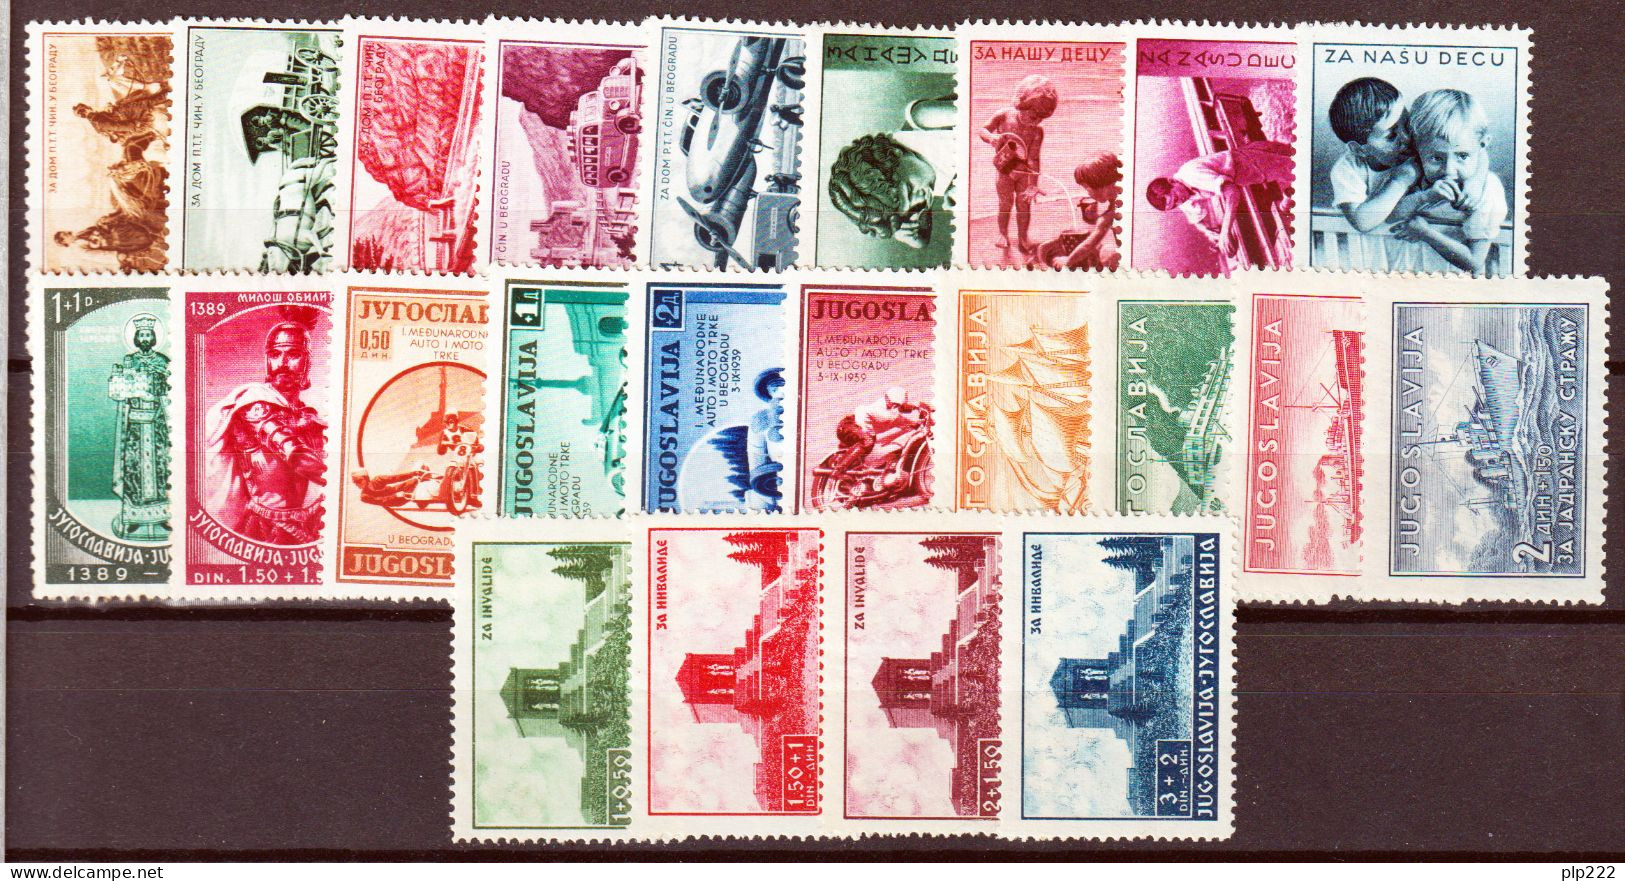 Jugoslavia 1939 Annata Completa Commemorativi / Complete Year Set Commemoratives **/MNH VF/F - Annate Complete